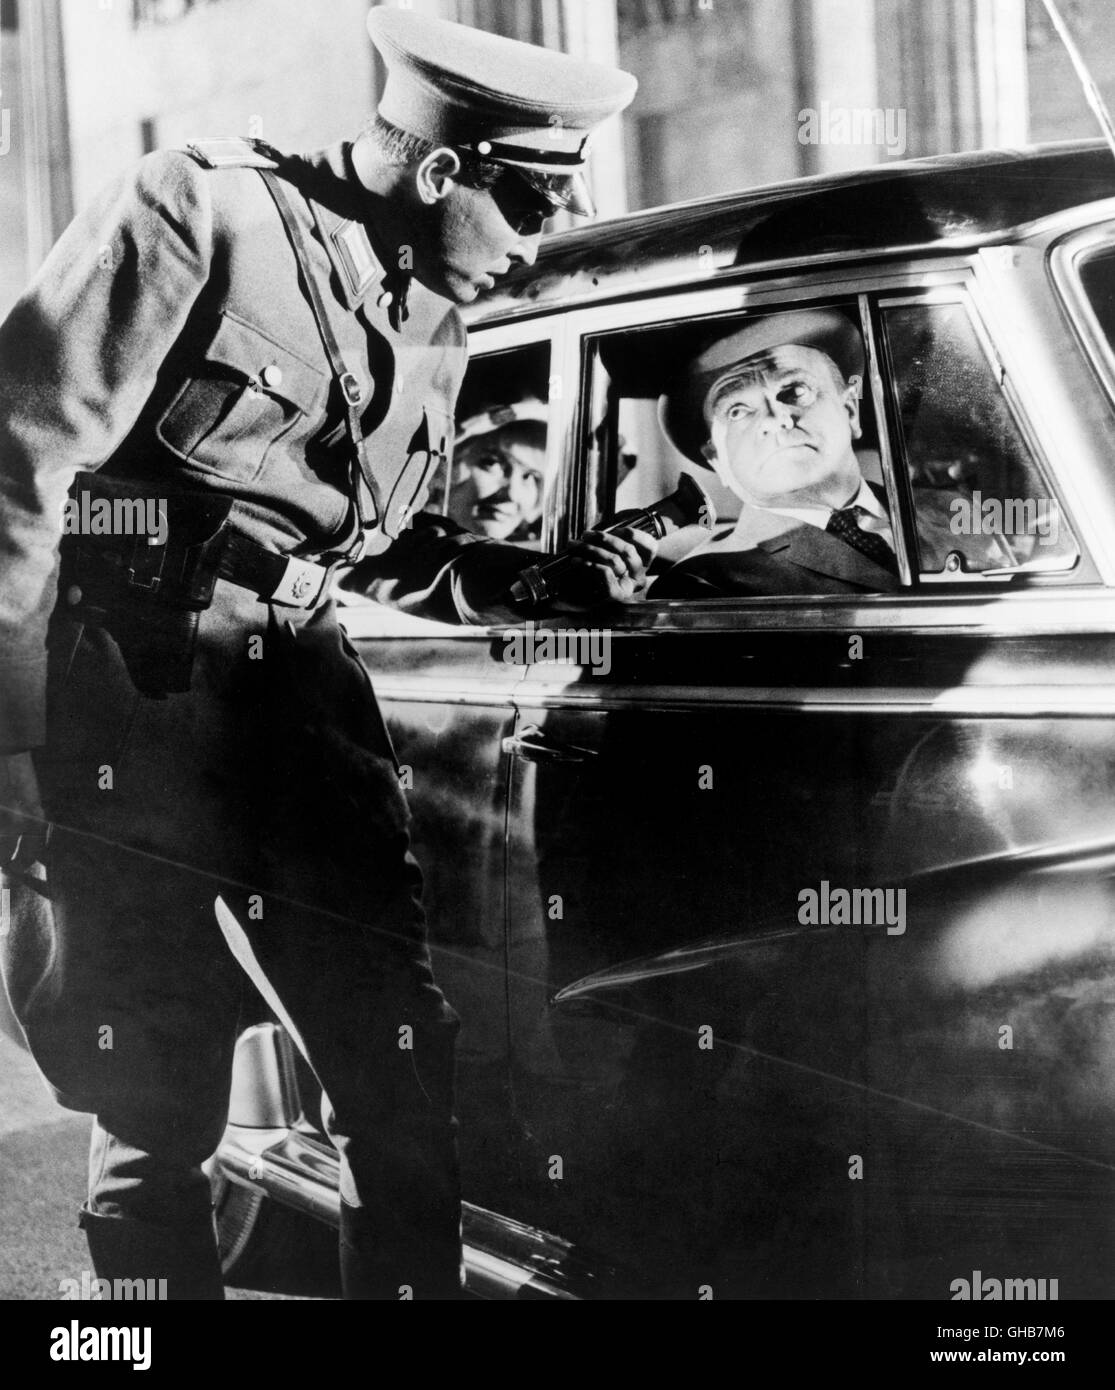 EINS, ZWEI, DREI Uno, Due, Tre USA/BRD 1961 Billy Wilder Szene: MacNamara (James Cagney) bei einer nächtlichen Autokontrolle in Ostberlin. Komödie Regie: Billy Wilder aka. Uno, Due, Tre Foto Stock